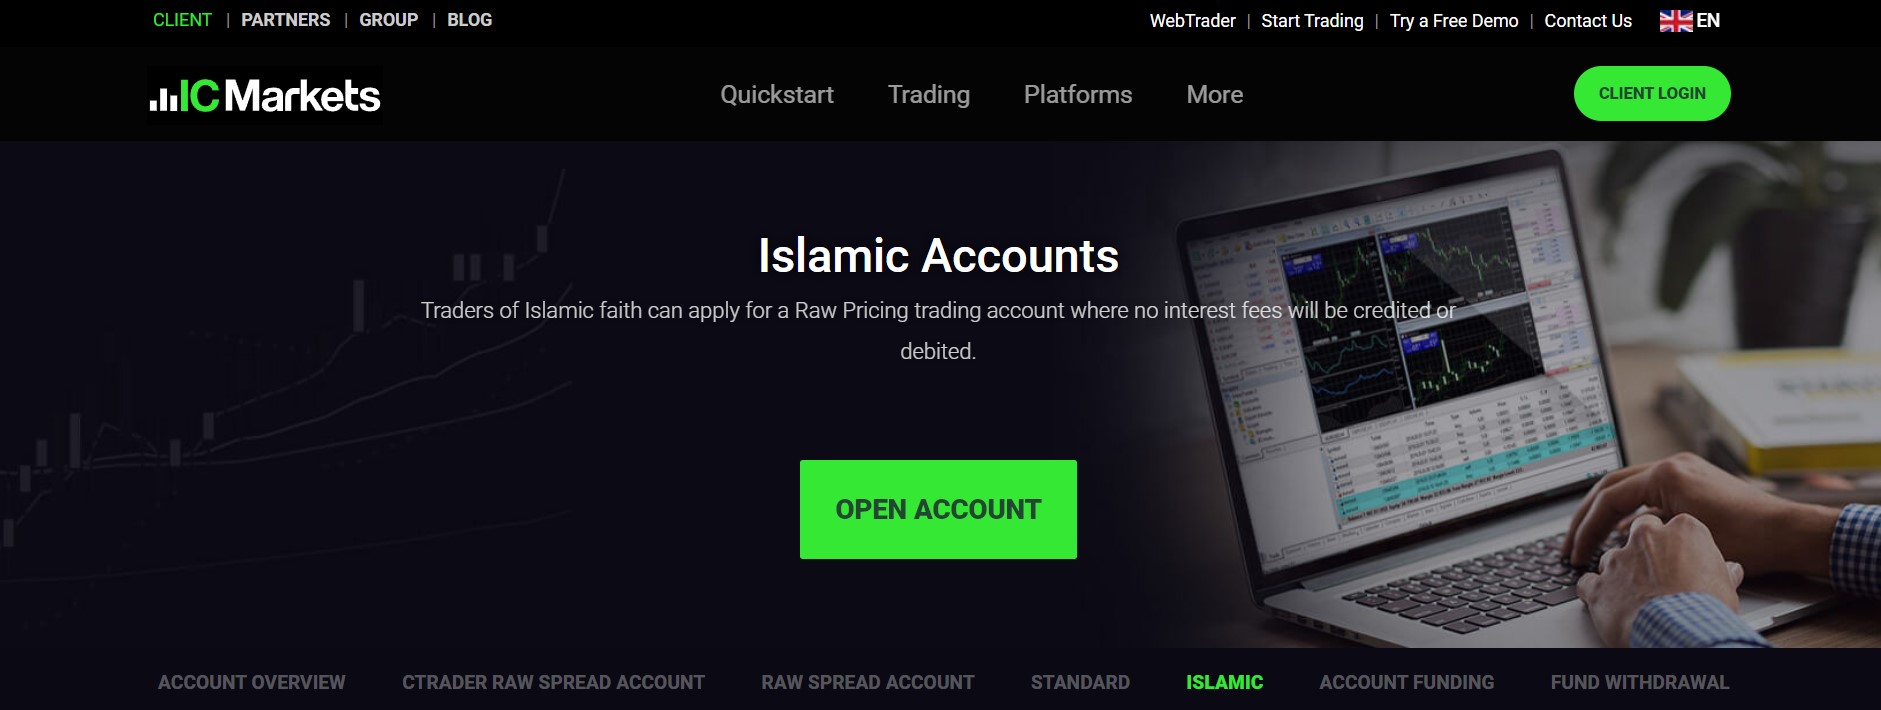 Swap-free, или исламские счета: экспресс-обзор торговых условий 10 брокеров